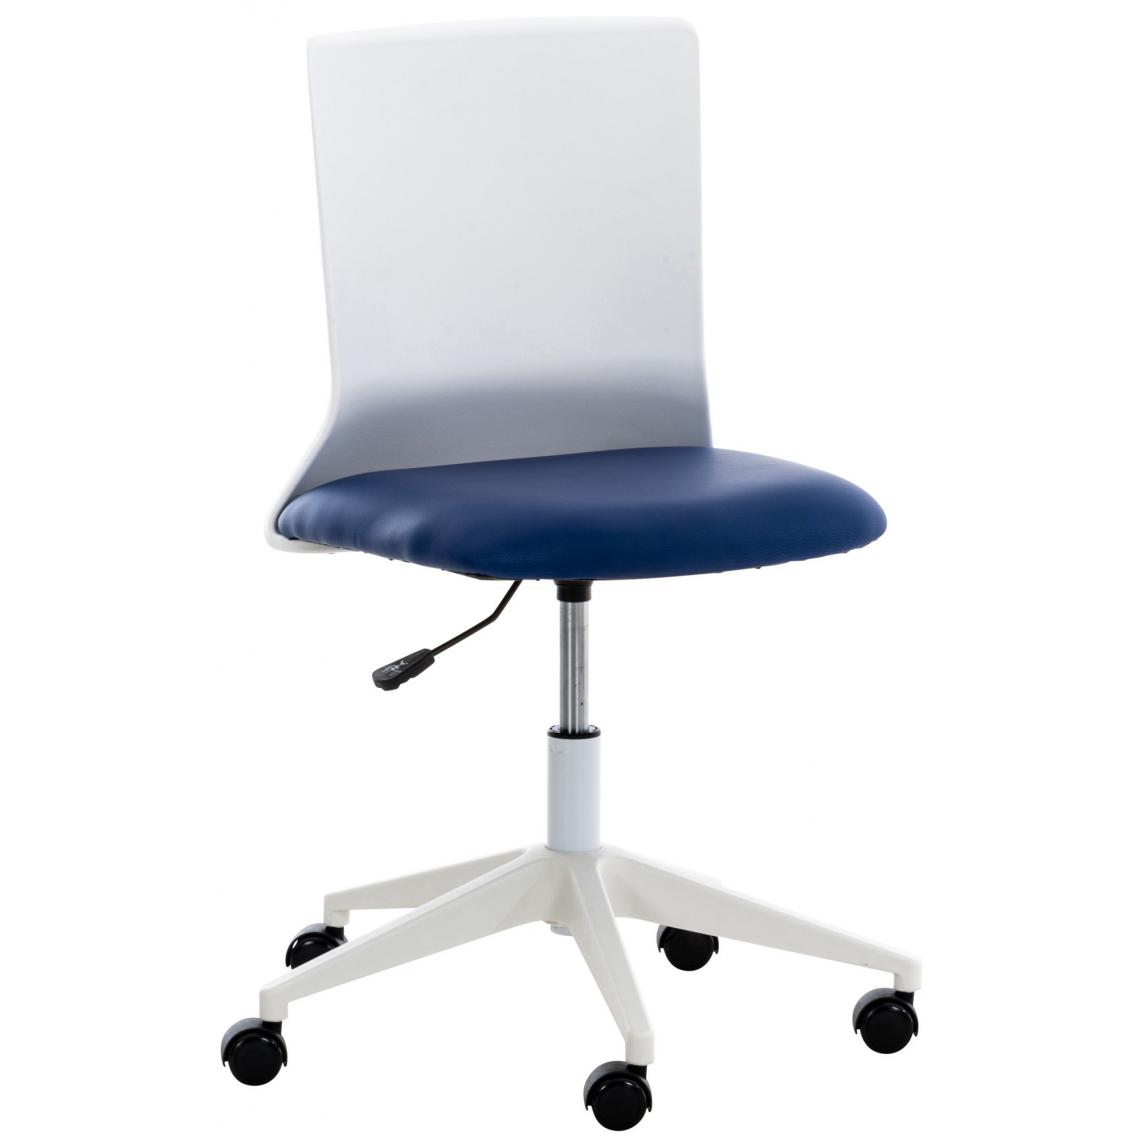 Decoshop26 - Chaise de bureau sur roulettes moderne pivotante hauteur réglable plastique blanc et similicuir bleu BUR10498 - Bureaux